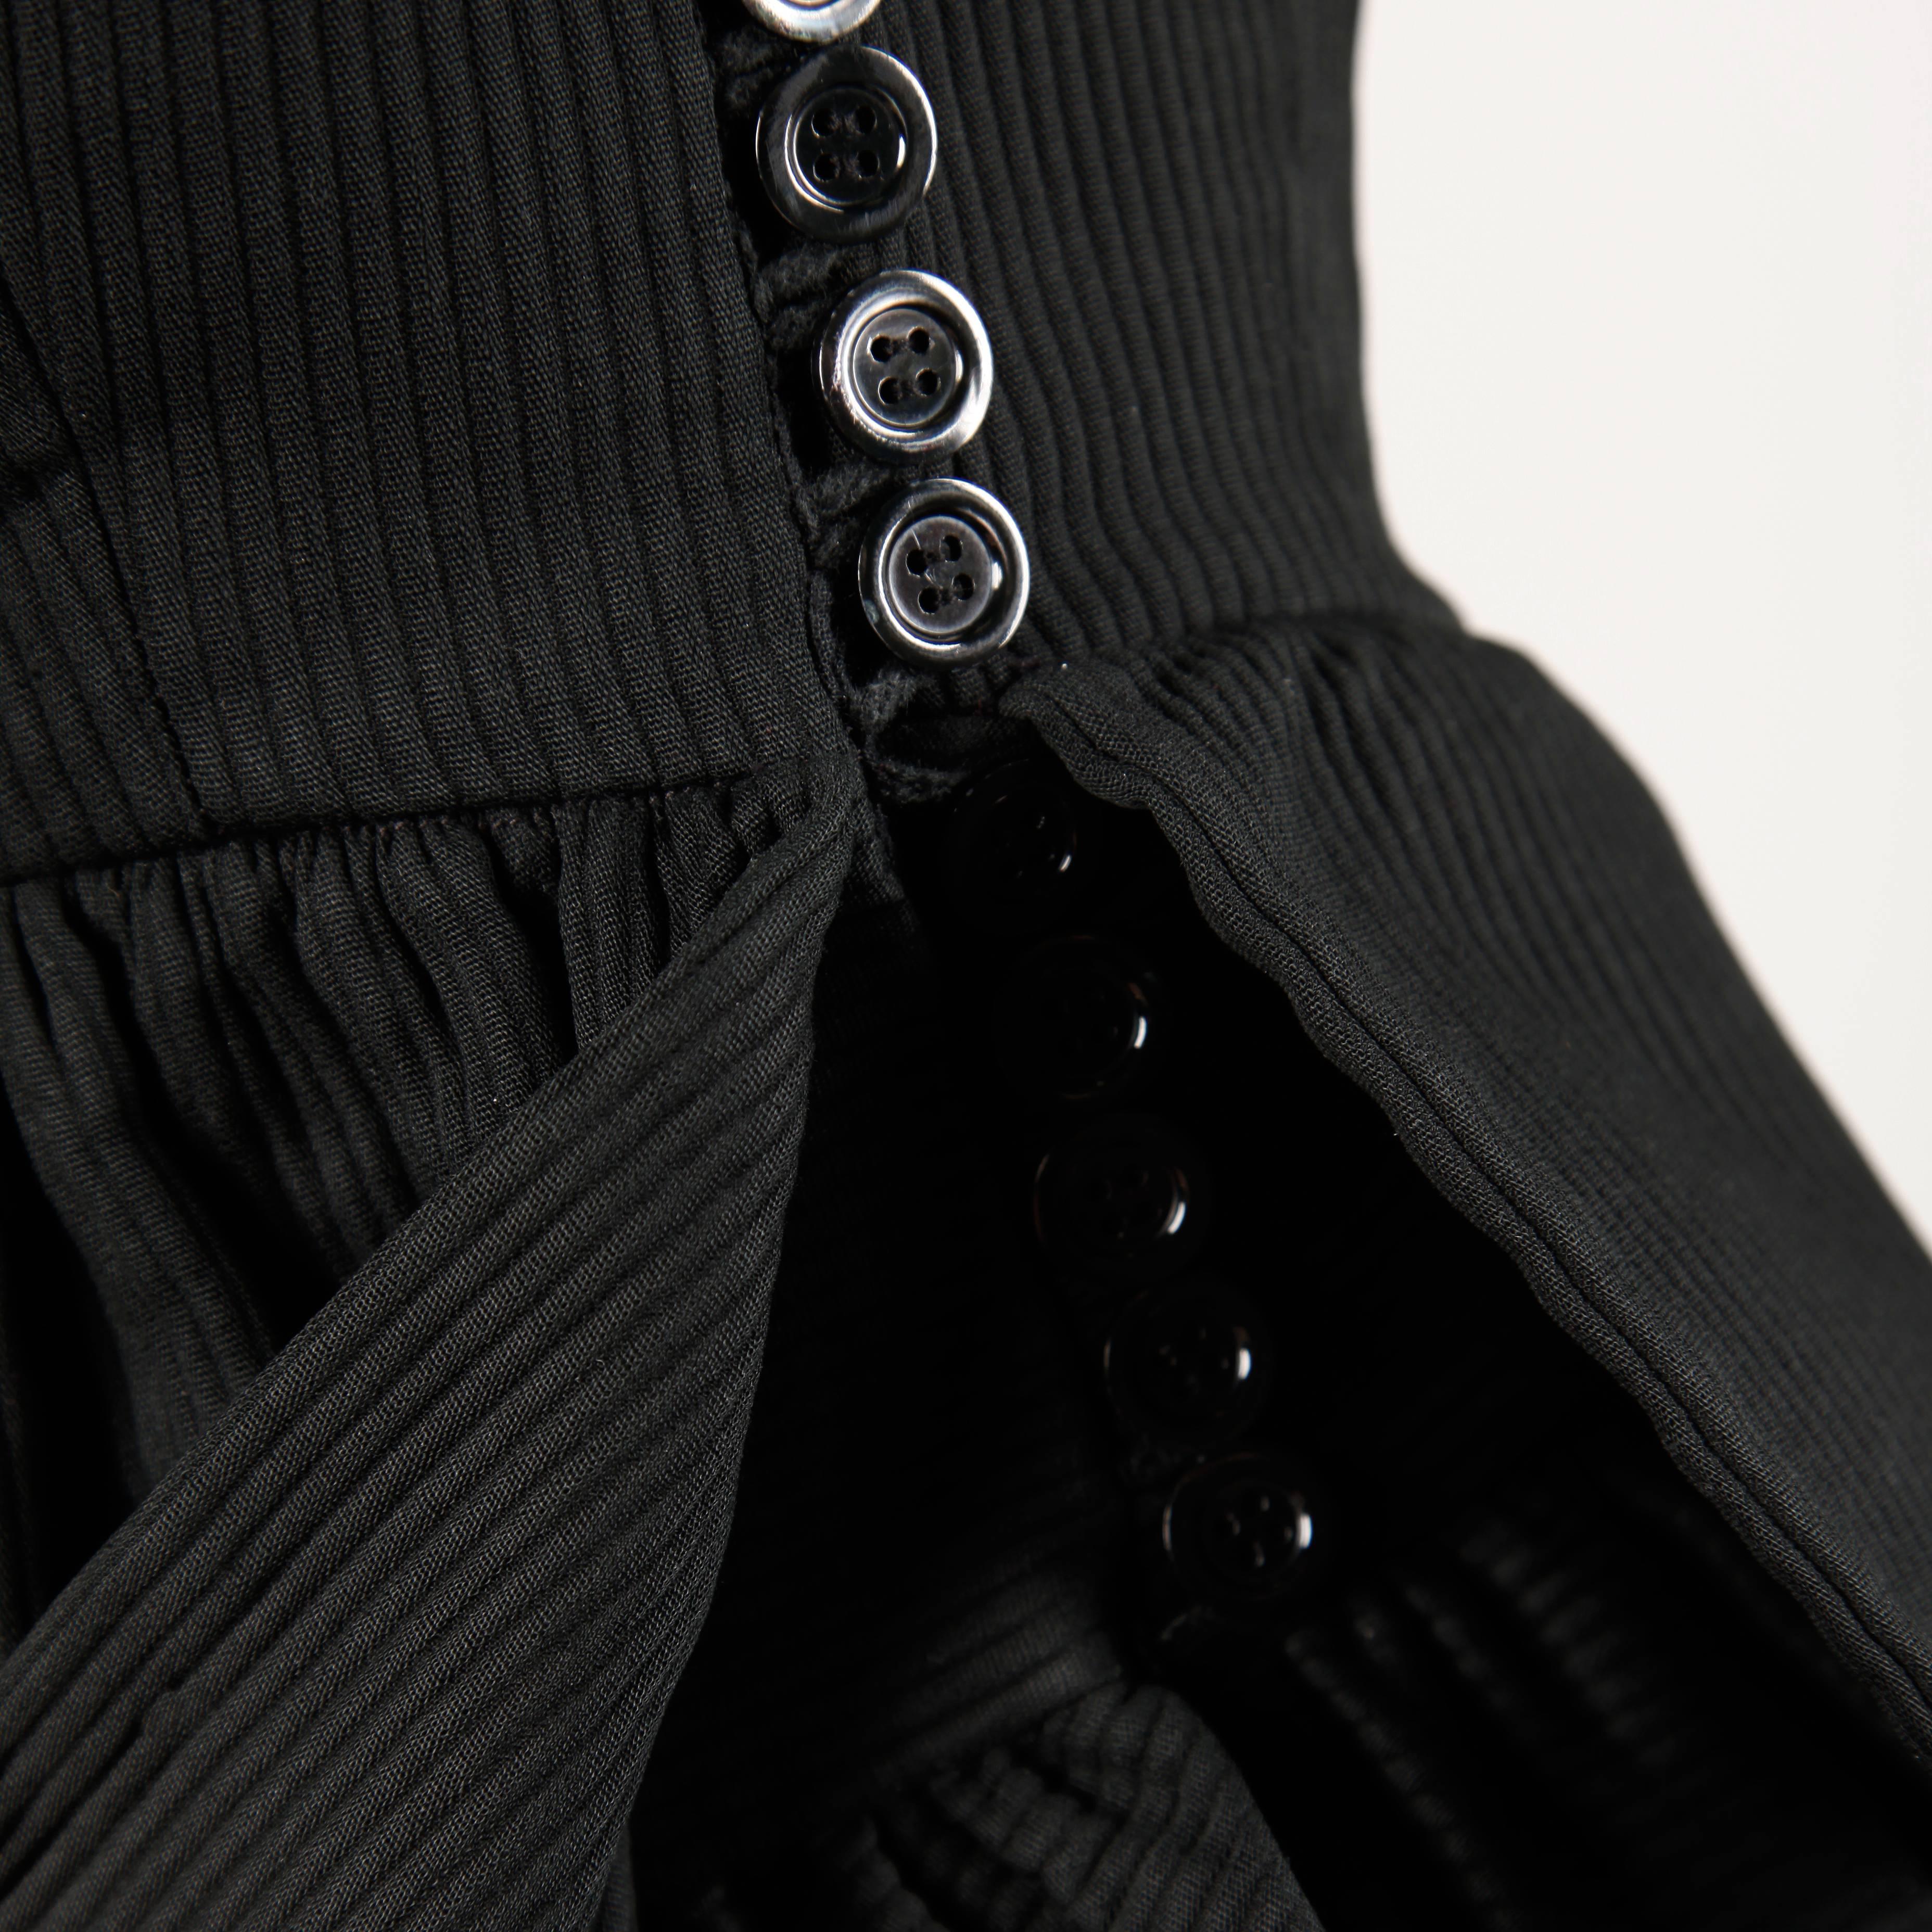 Chic petite robe noire bustier vintage des années 1980, signée Lanvin. Boutons asymétriques et péplum volant. Tissu de coton côtelé de poids moyen.

Détails : 

Entièrement doublé en coton
Bouton avec fermeture à crochet/enveloppe
Taille estimée :